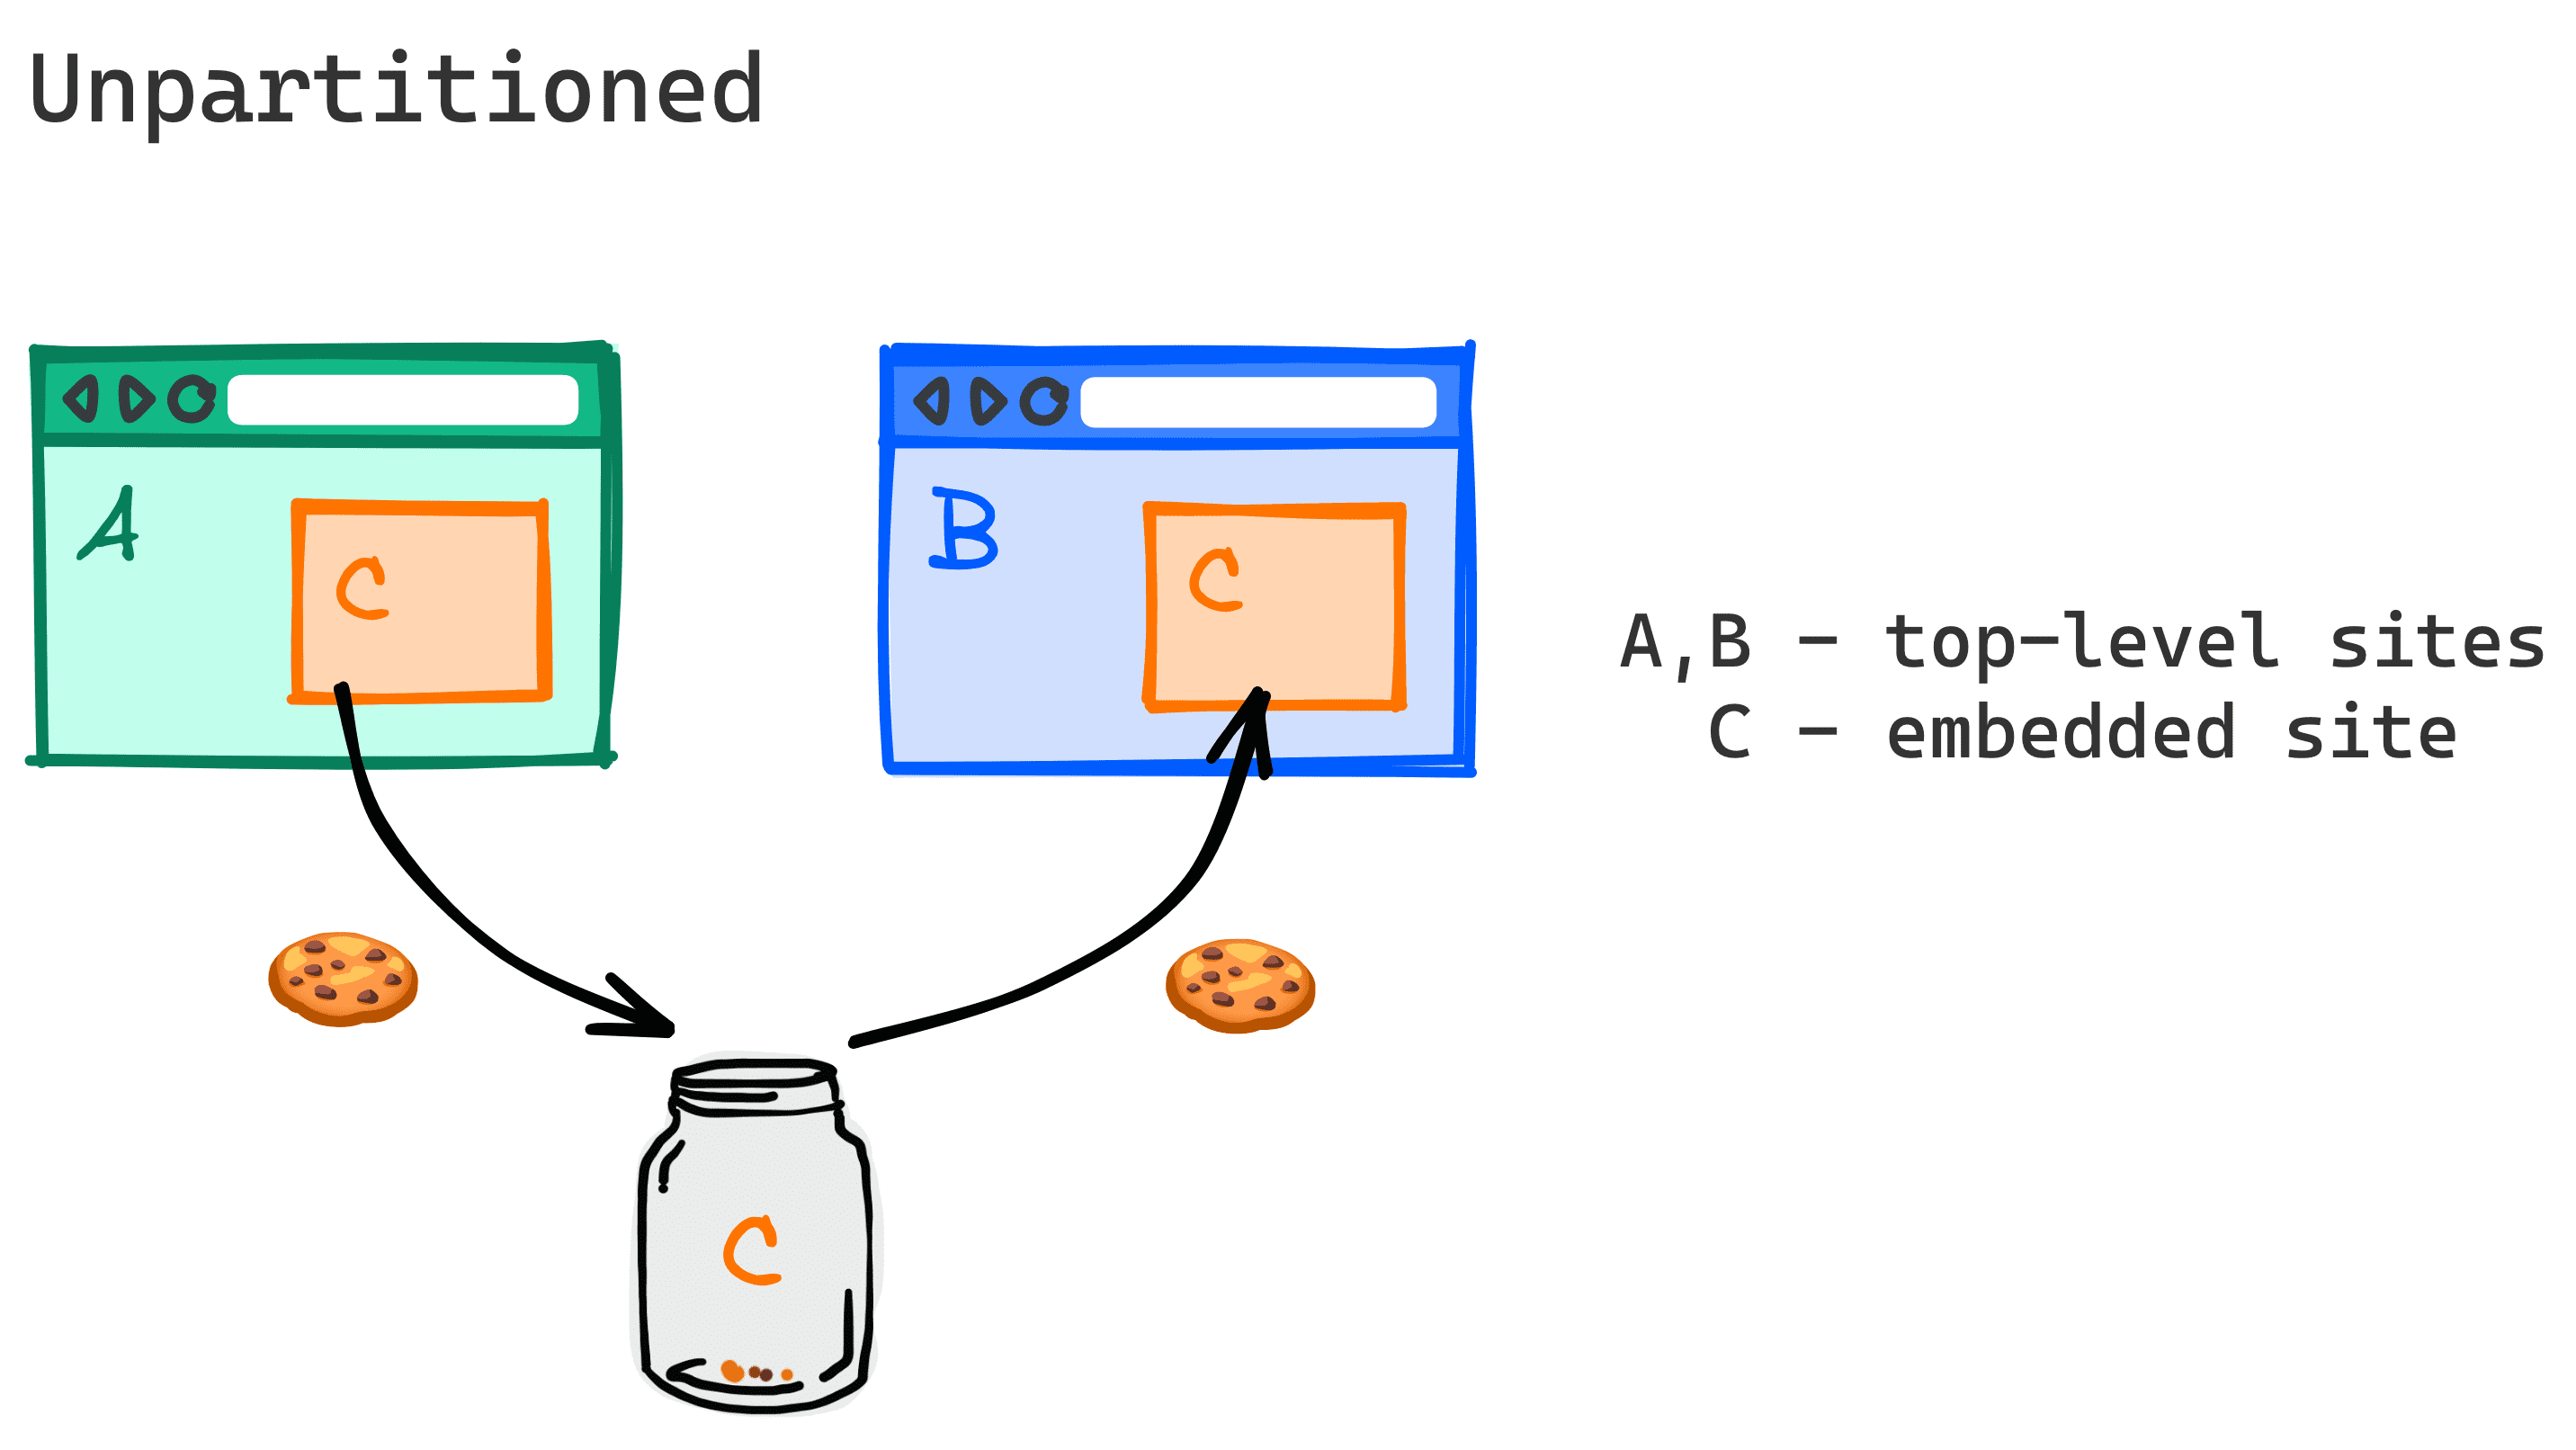 Diagramme illustrant comment des cuisiniers peuvent être partagés entre deux sites Web différents.